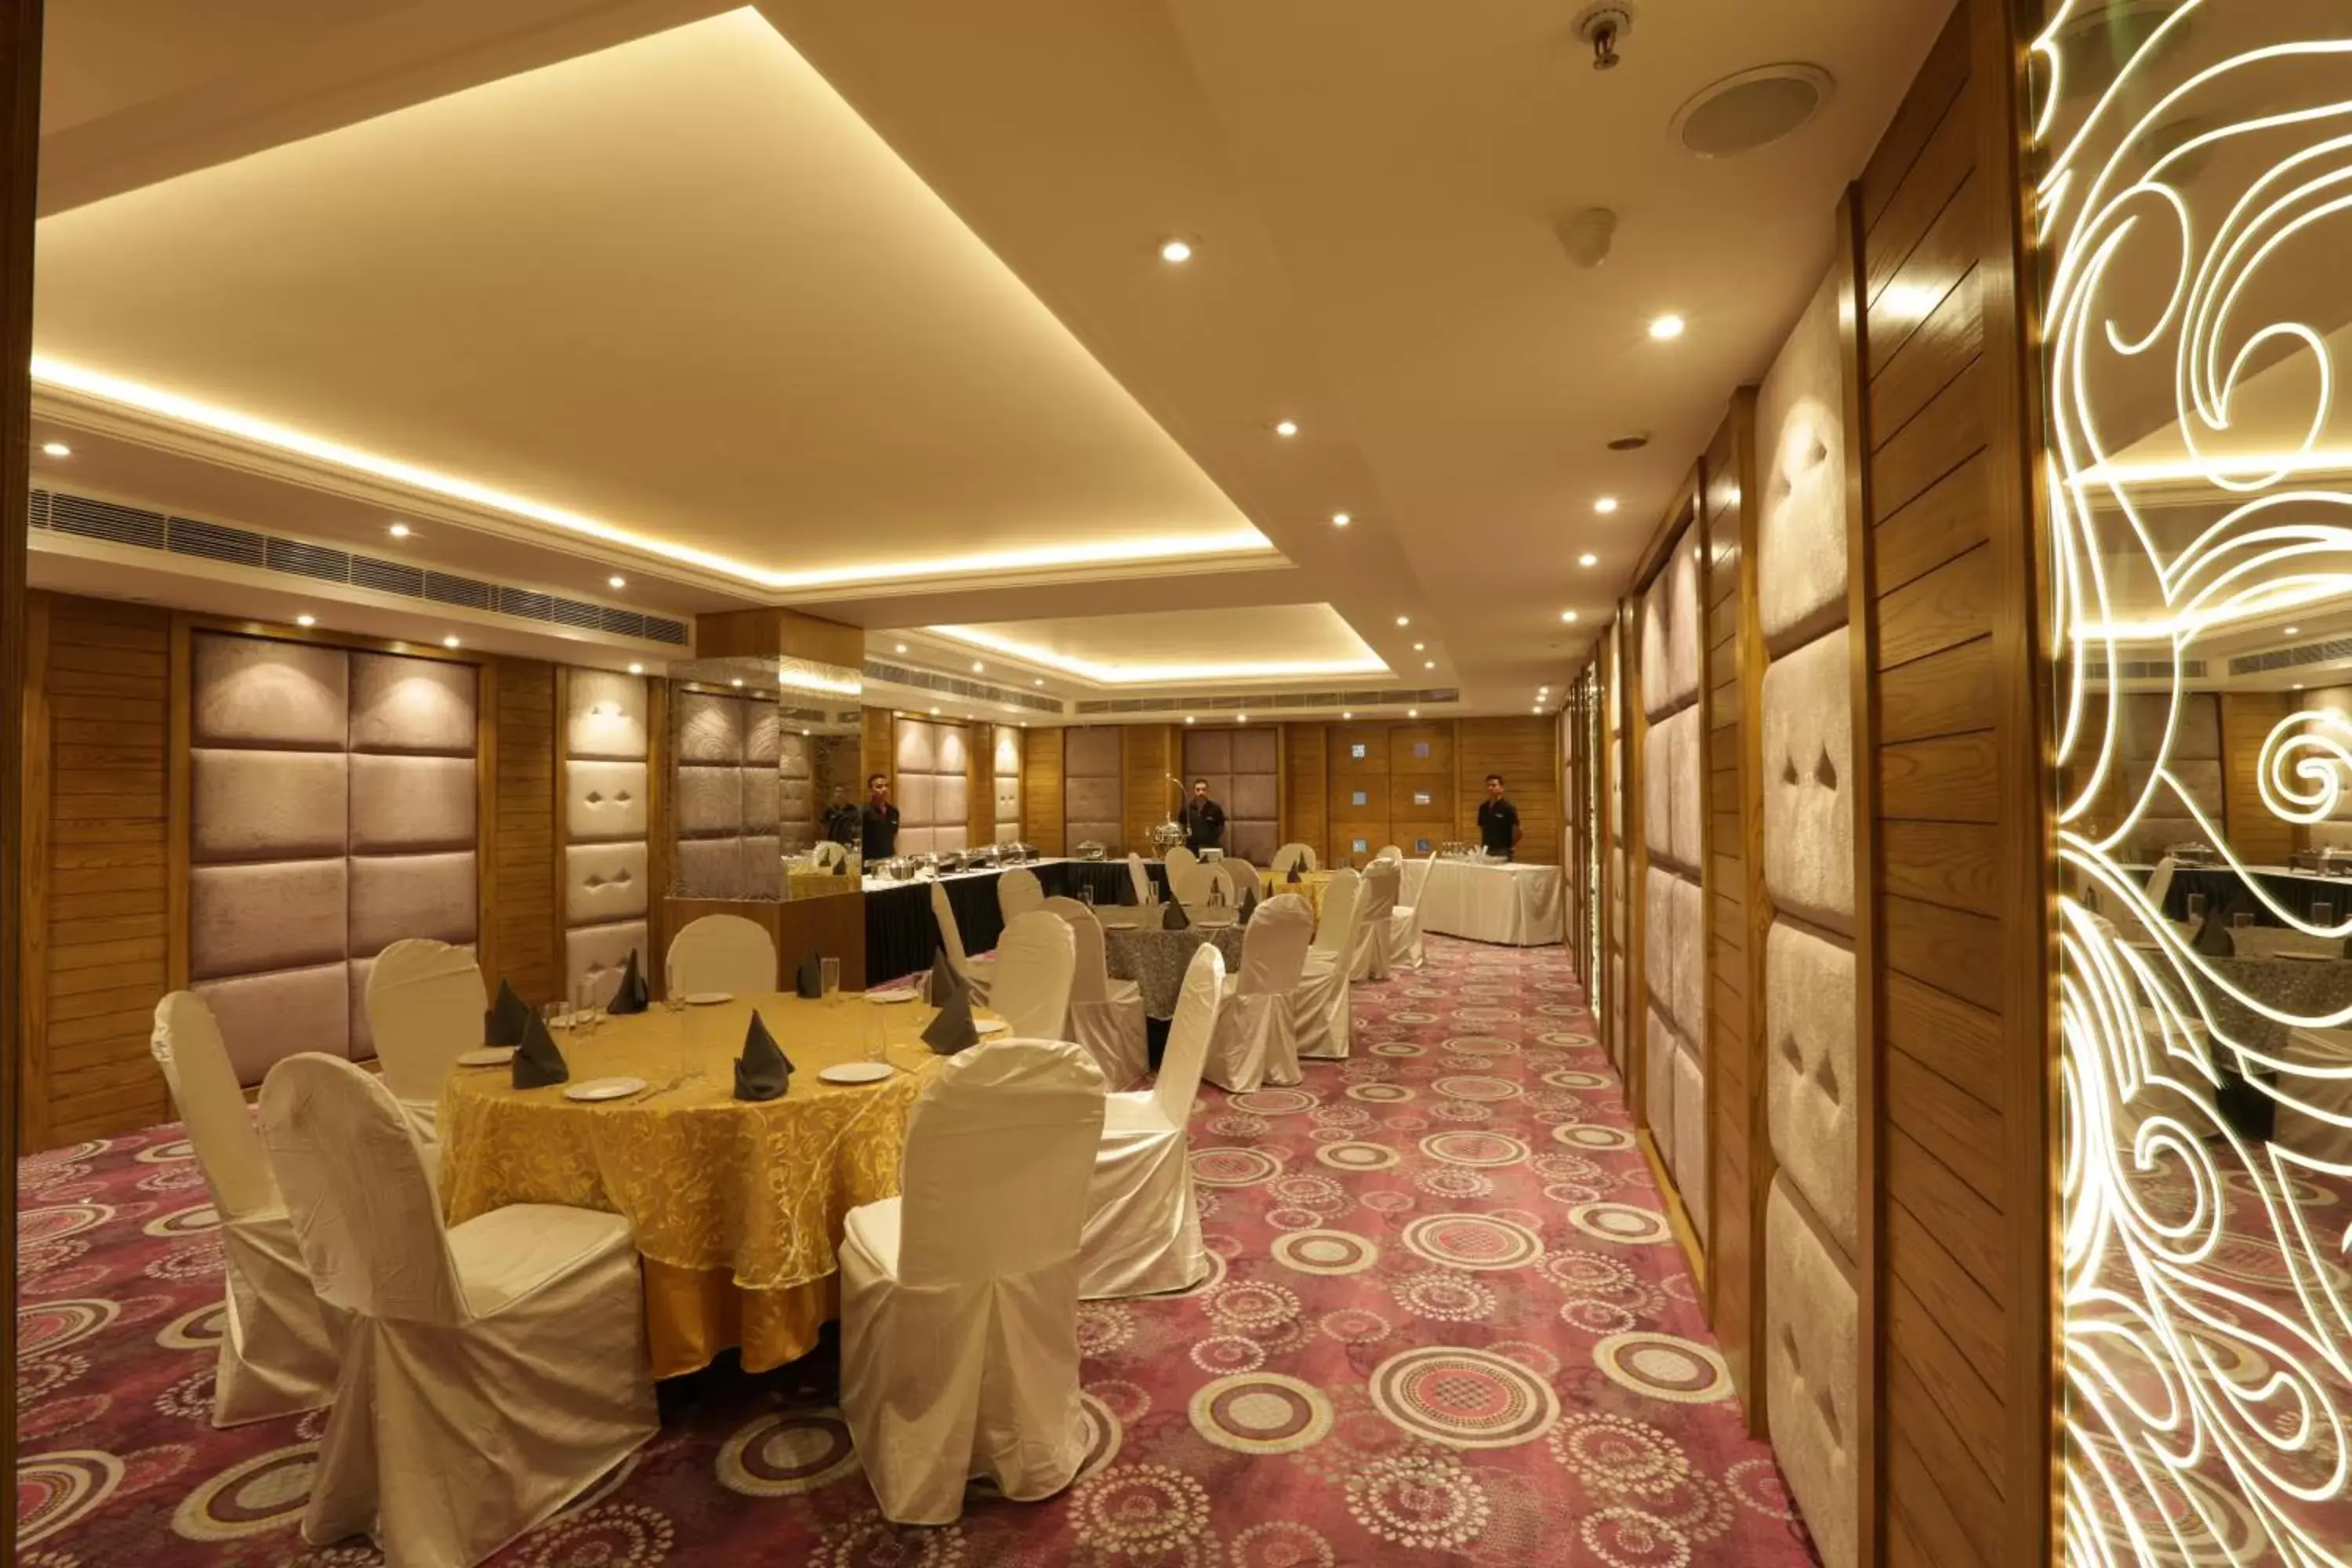 Banquet/Function facilities, Banquet Facilities in Ramada Encore Jalandhar